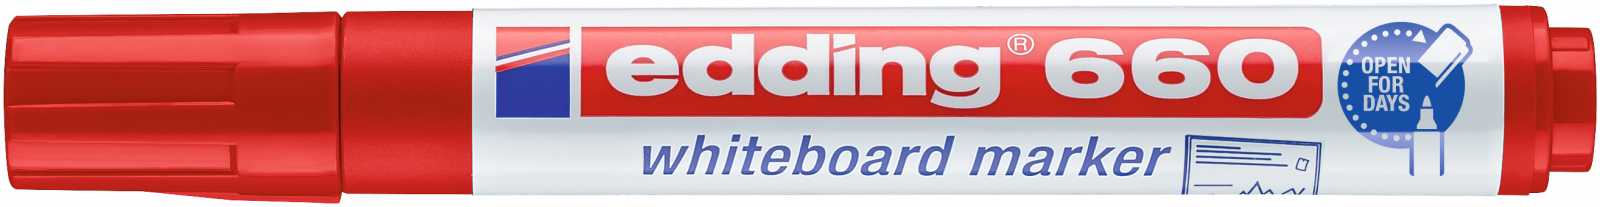 Marcador Edding  660-02 (Quadro Branco) Vermelho